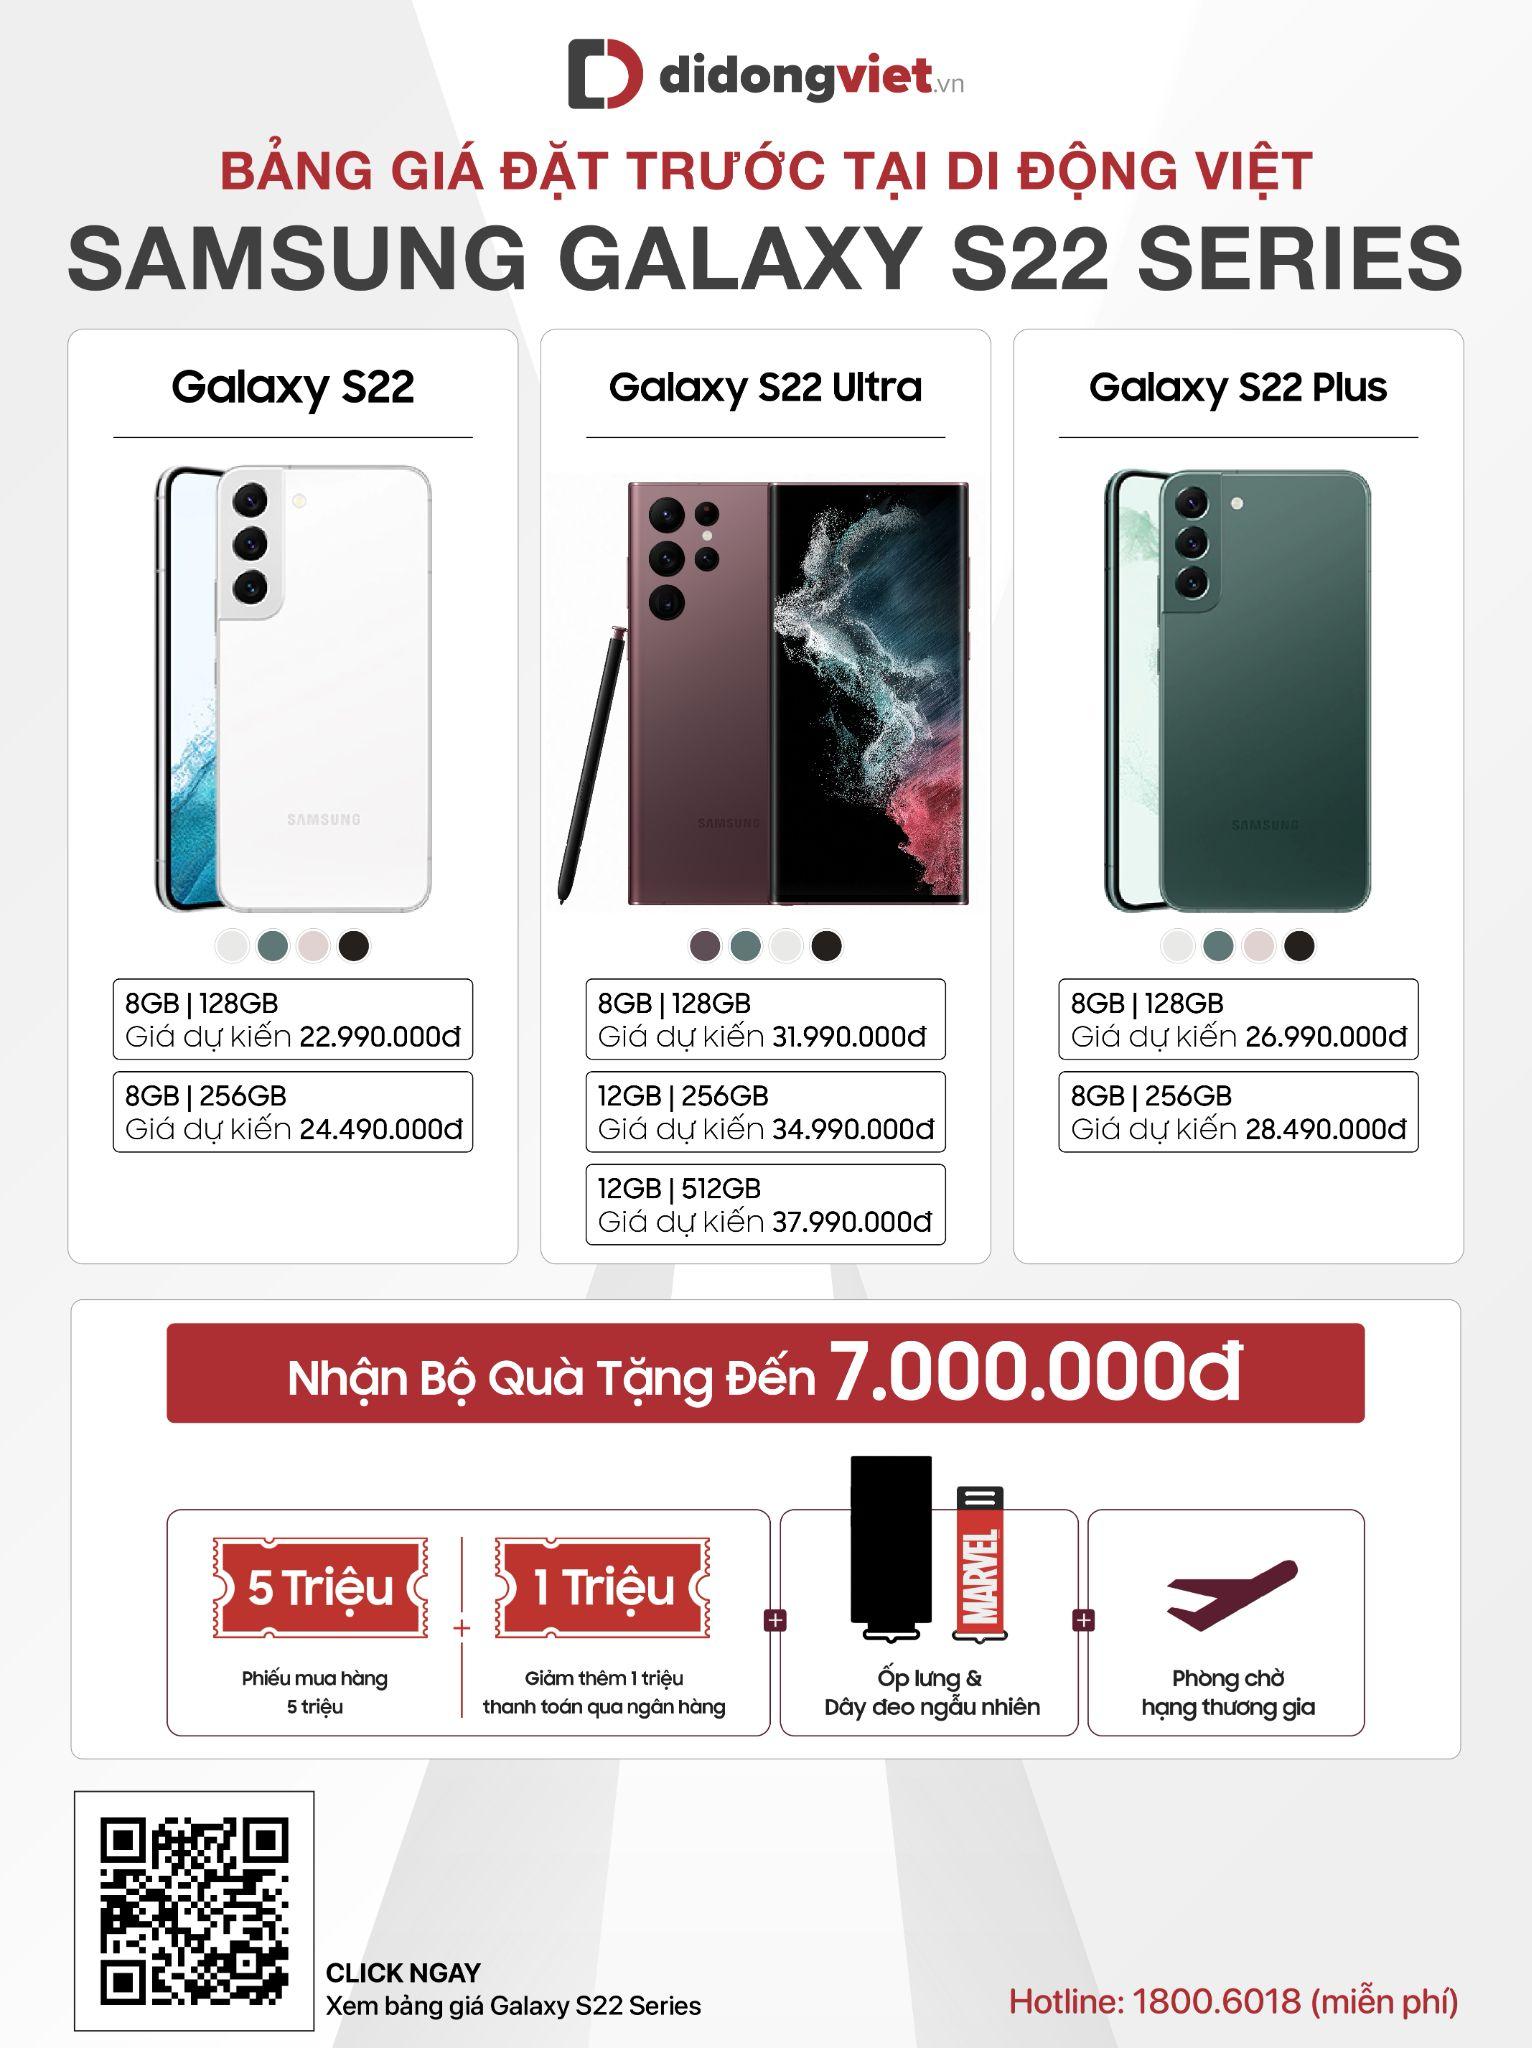 Lượng khách đặt trước Galaxy S22 series cao gấp 2 lần thế hệ tiền nhiệm